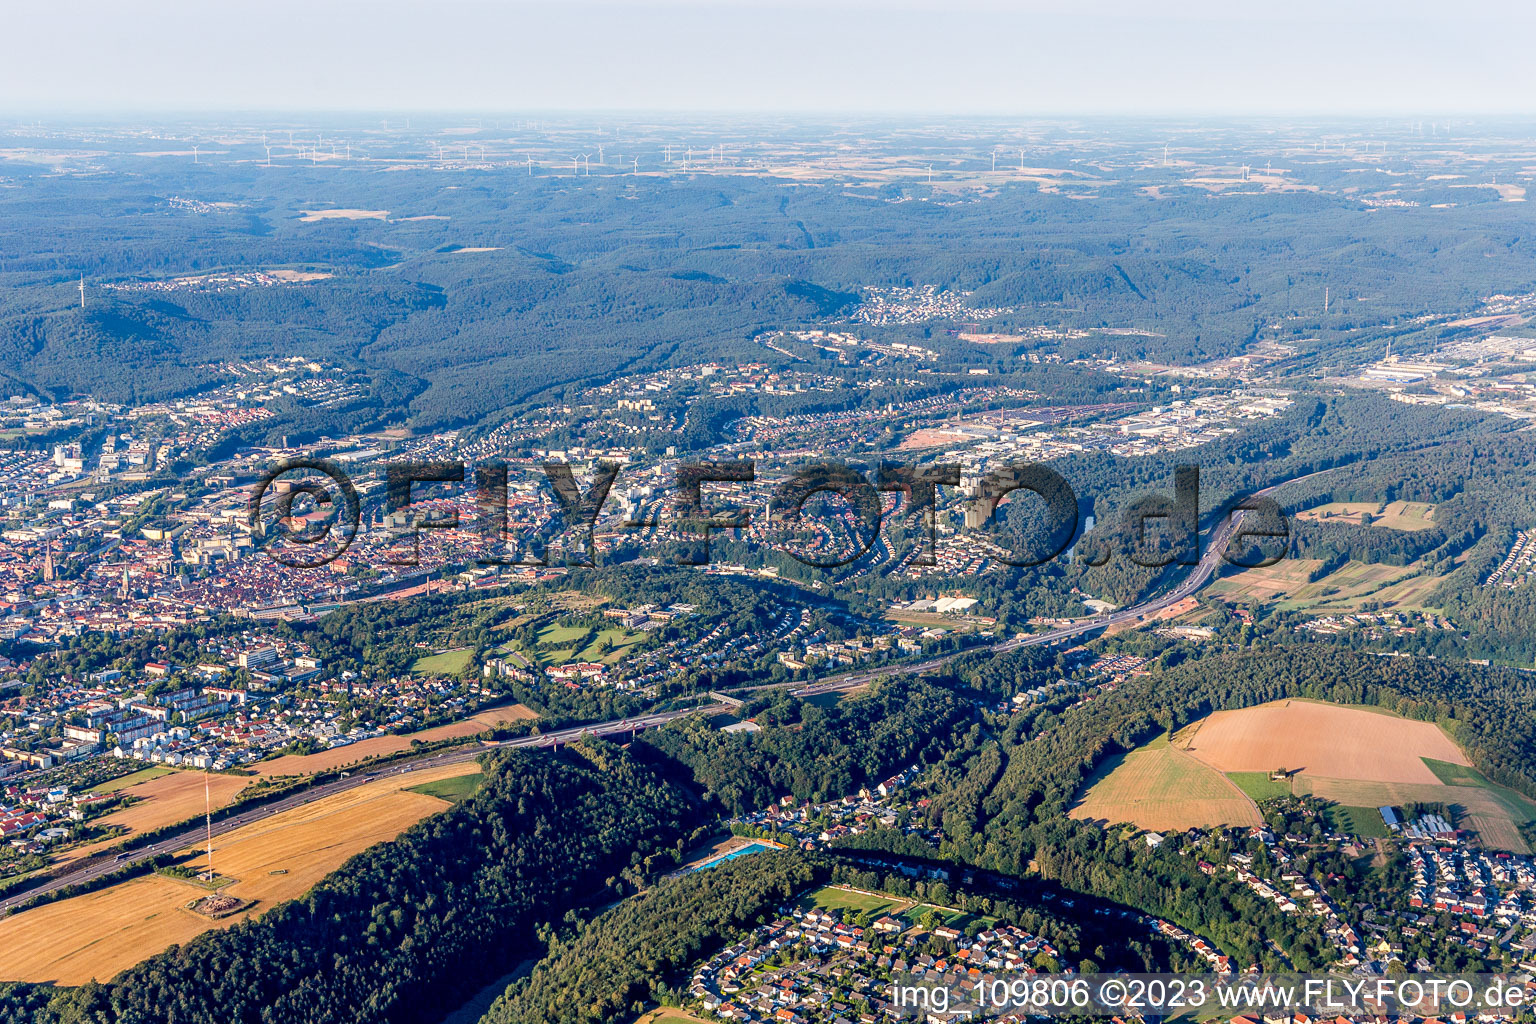 Luftbild von Kaiserslautern im Bundesland Rheinland-Pfalz, Deutschland